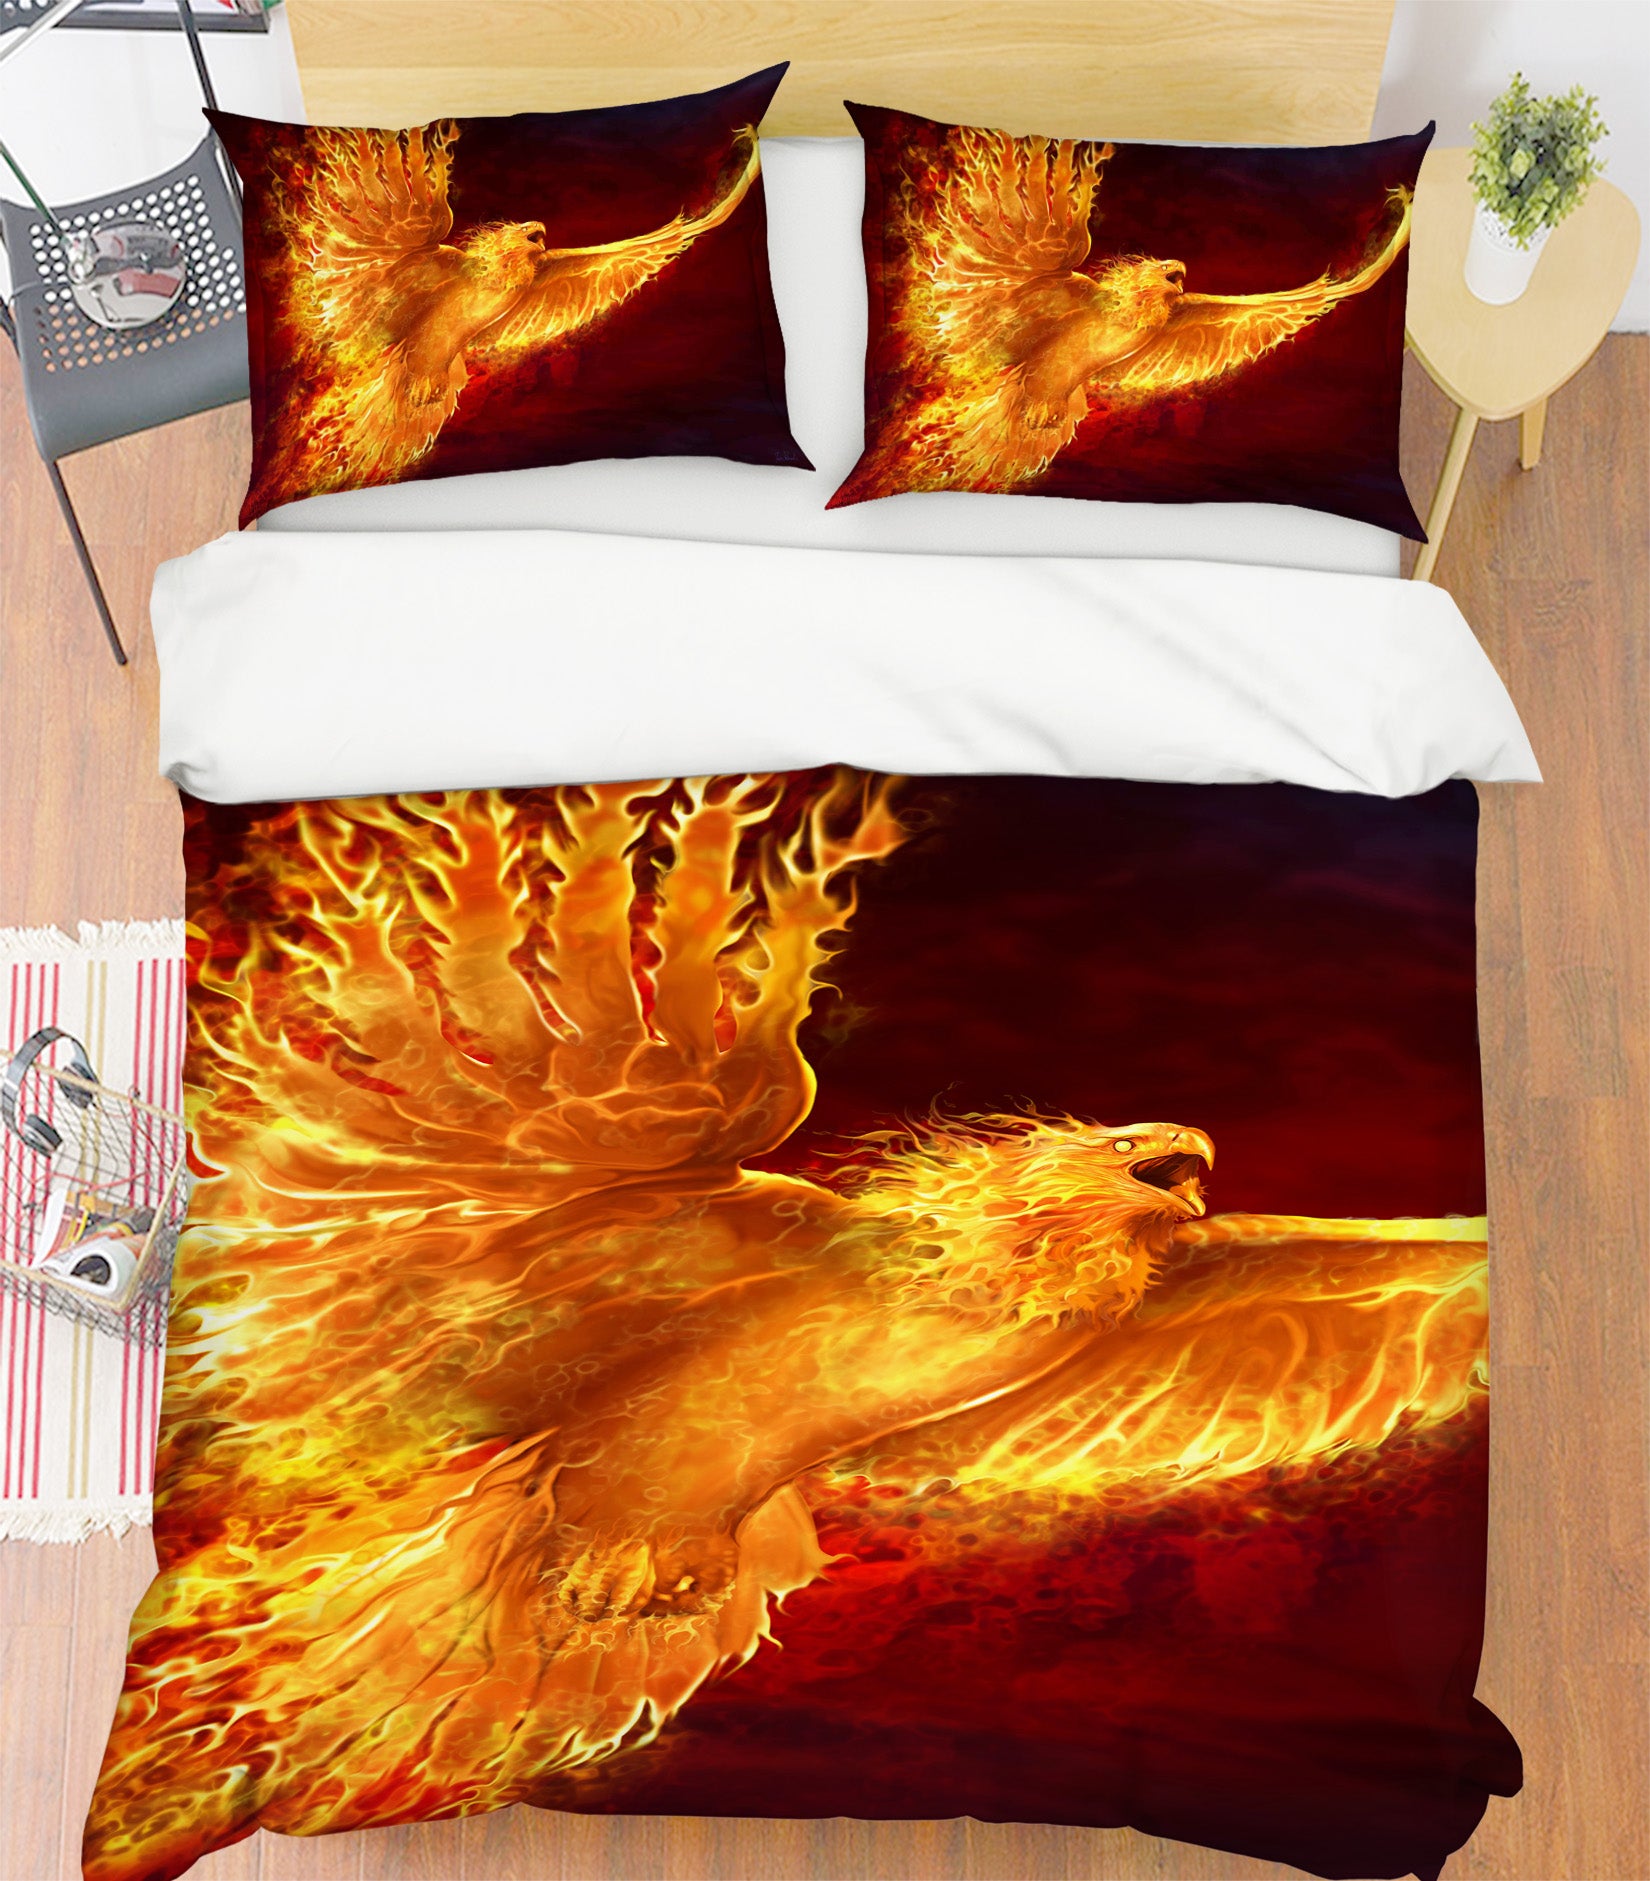 3D Firehawk 4070 Tom Wood Bedding Bed Pillowcases Quilt